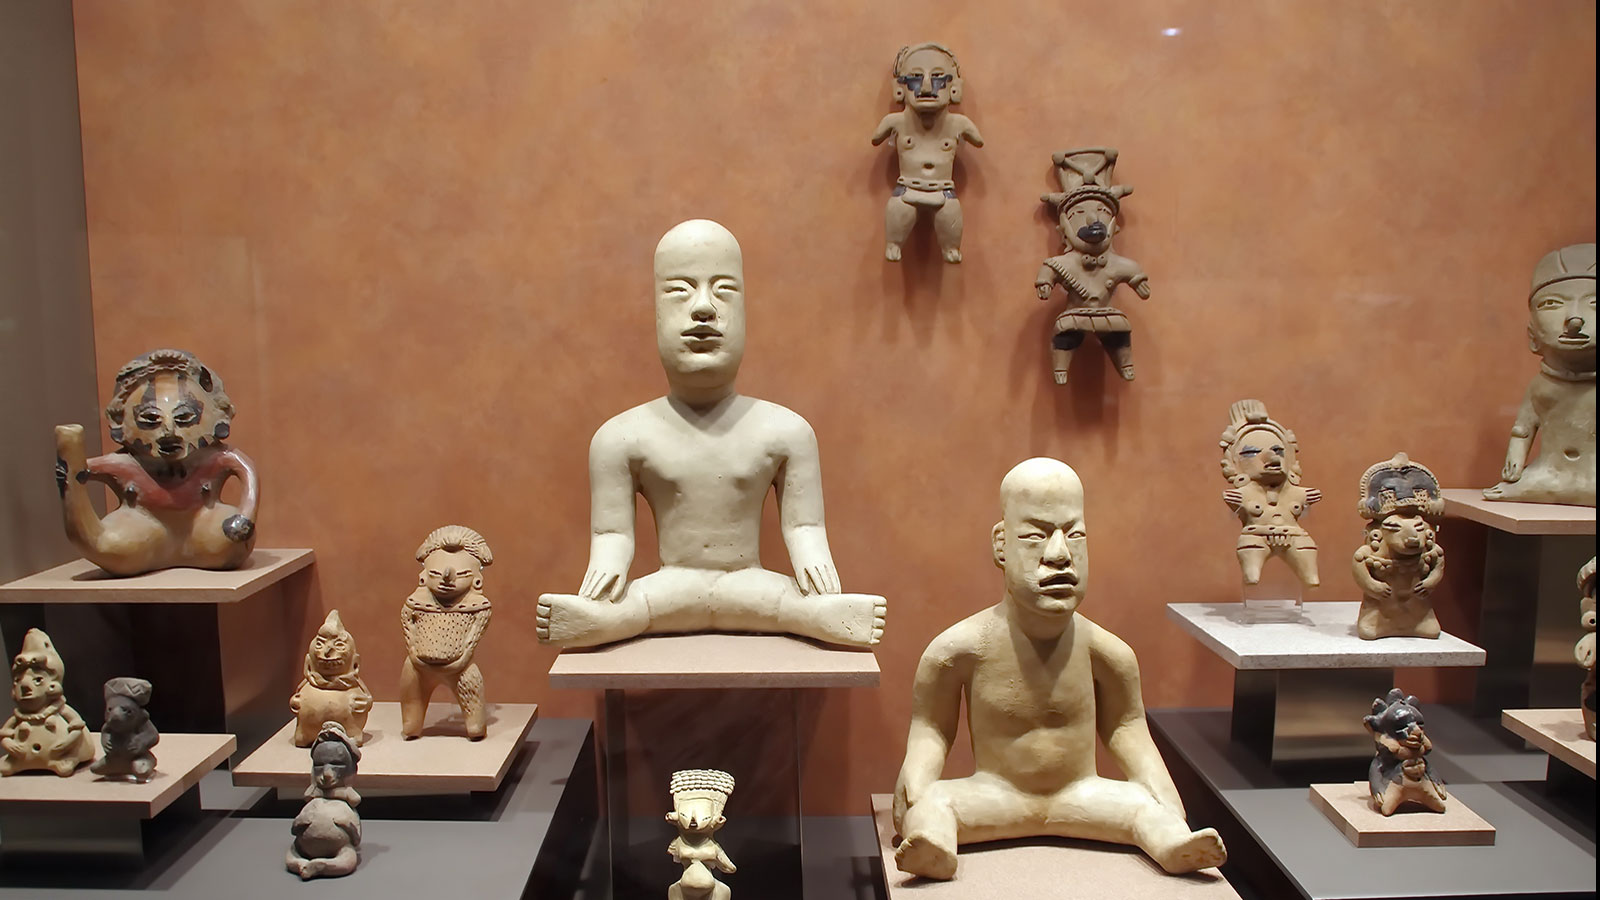 墨西哥國立人類學博物館